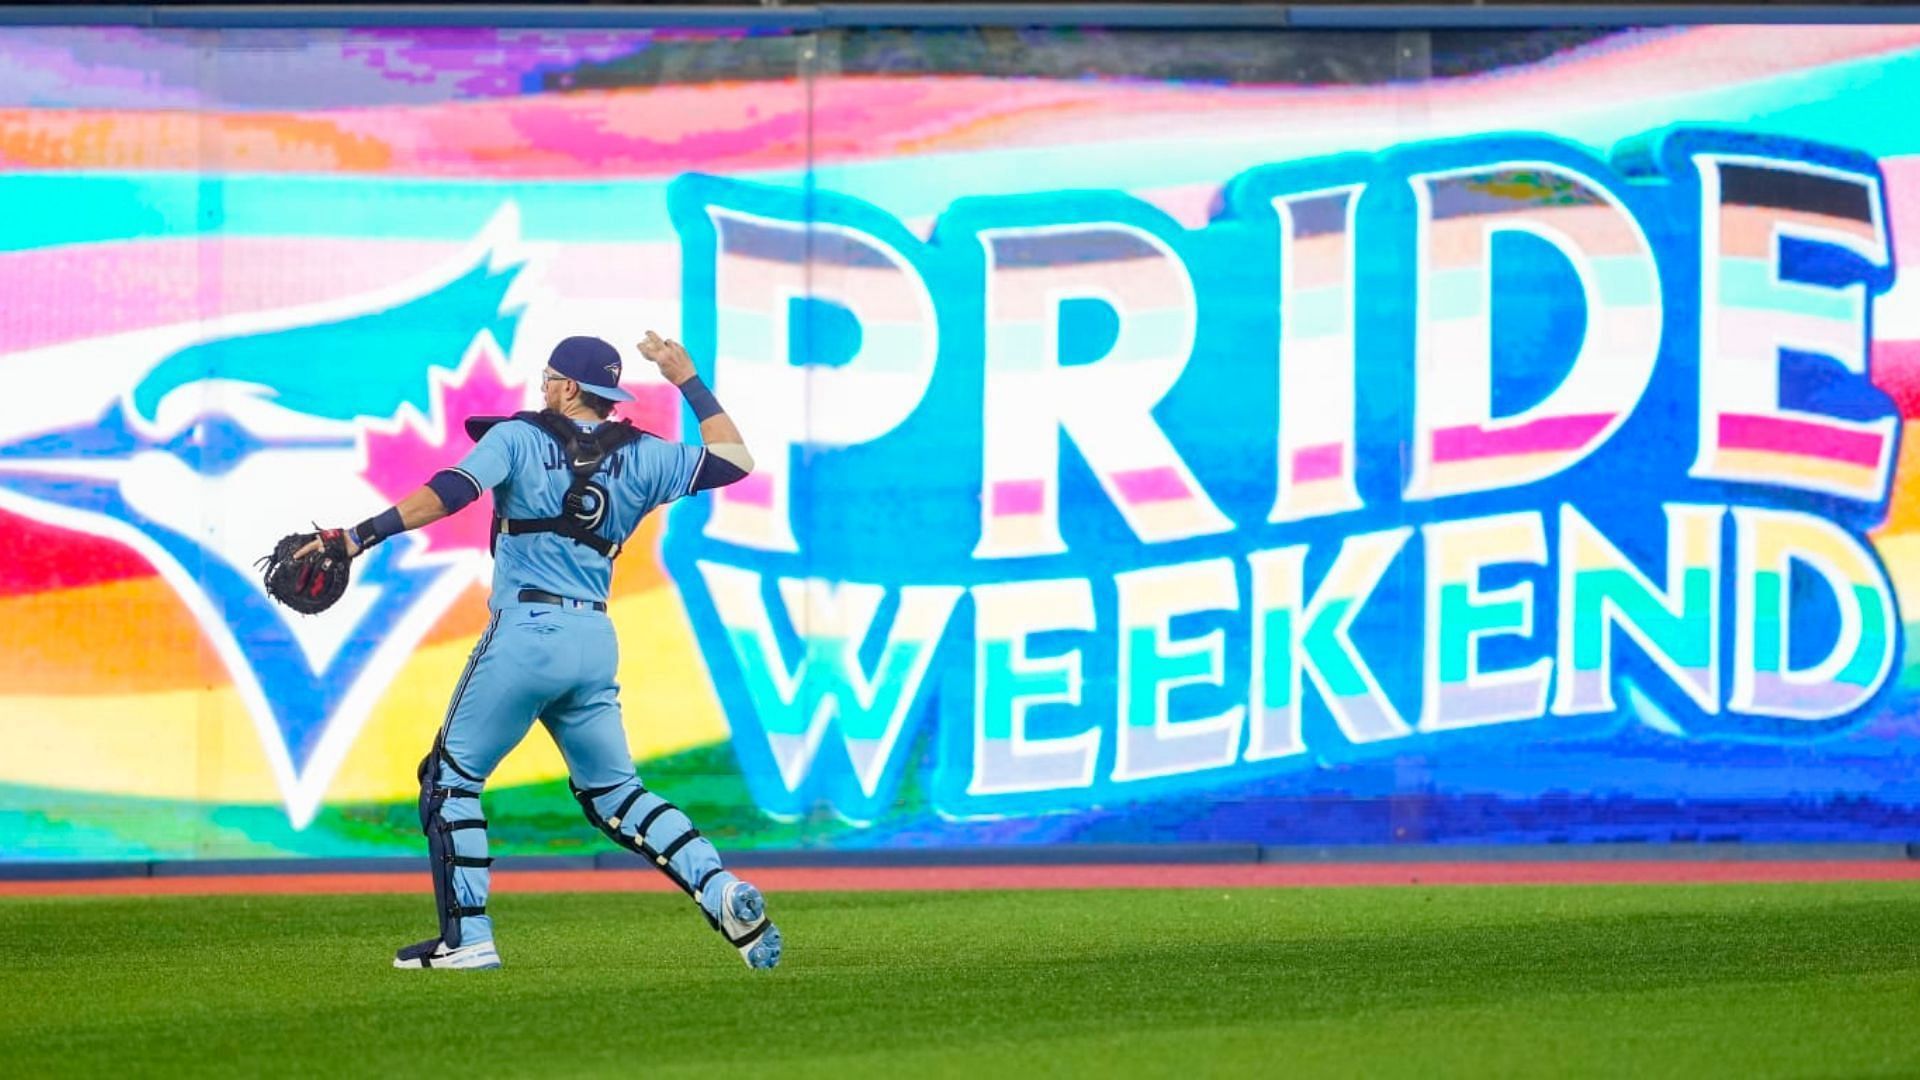 Pride weekend celebrations in MLB